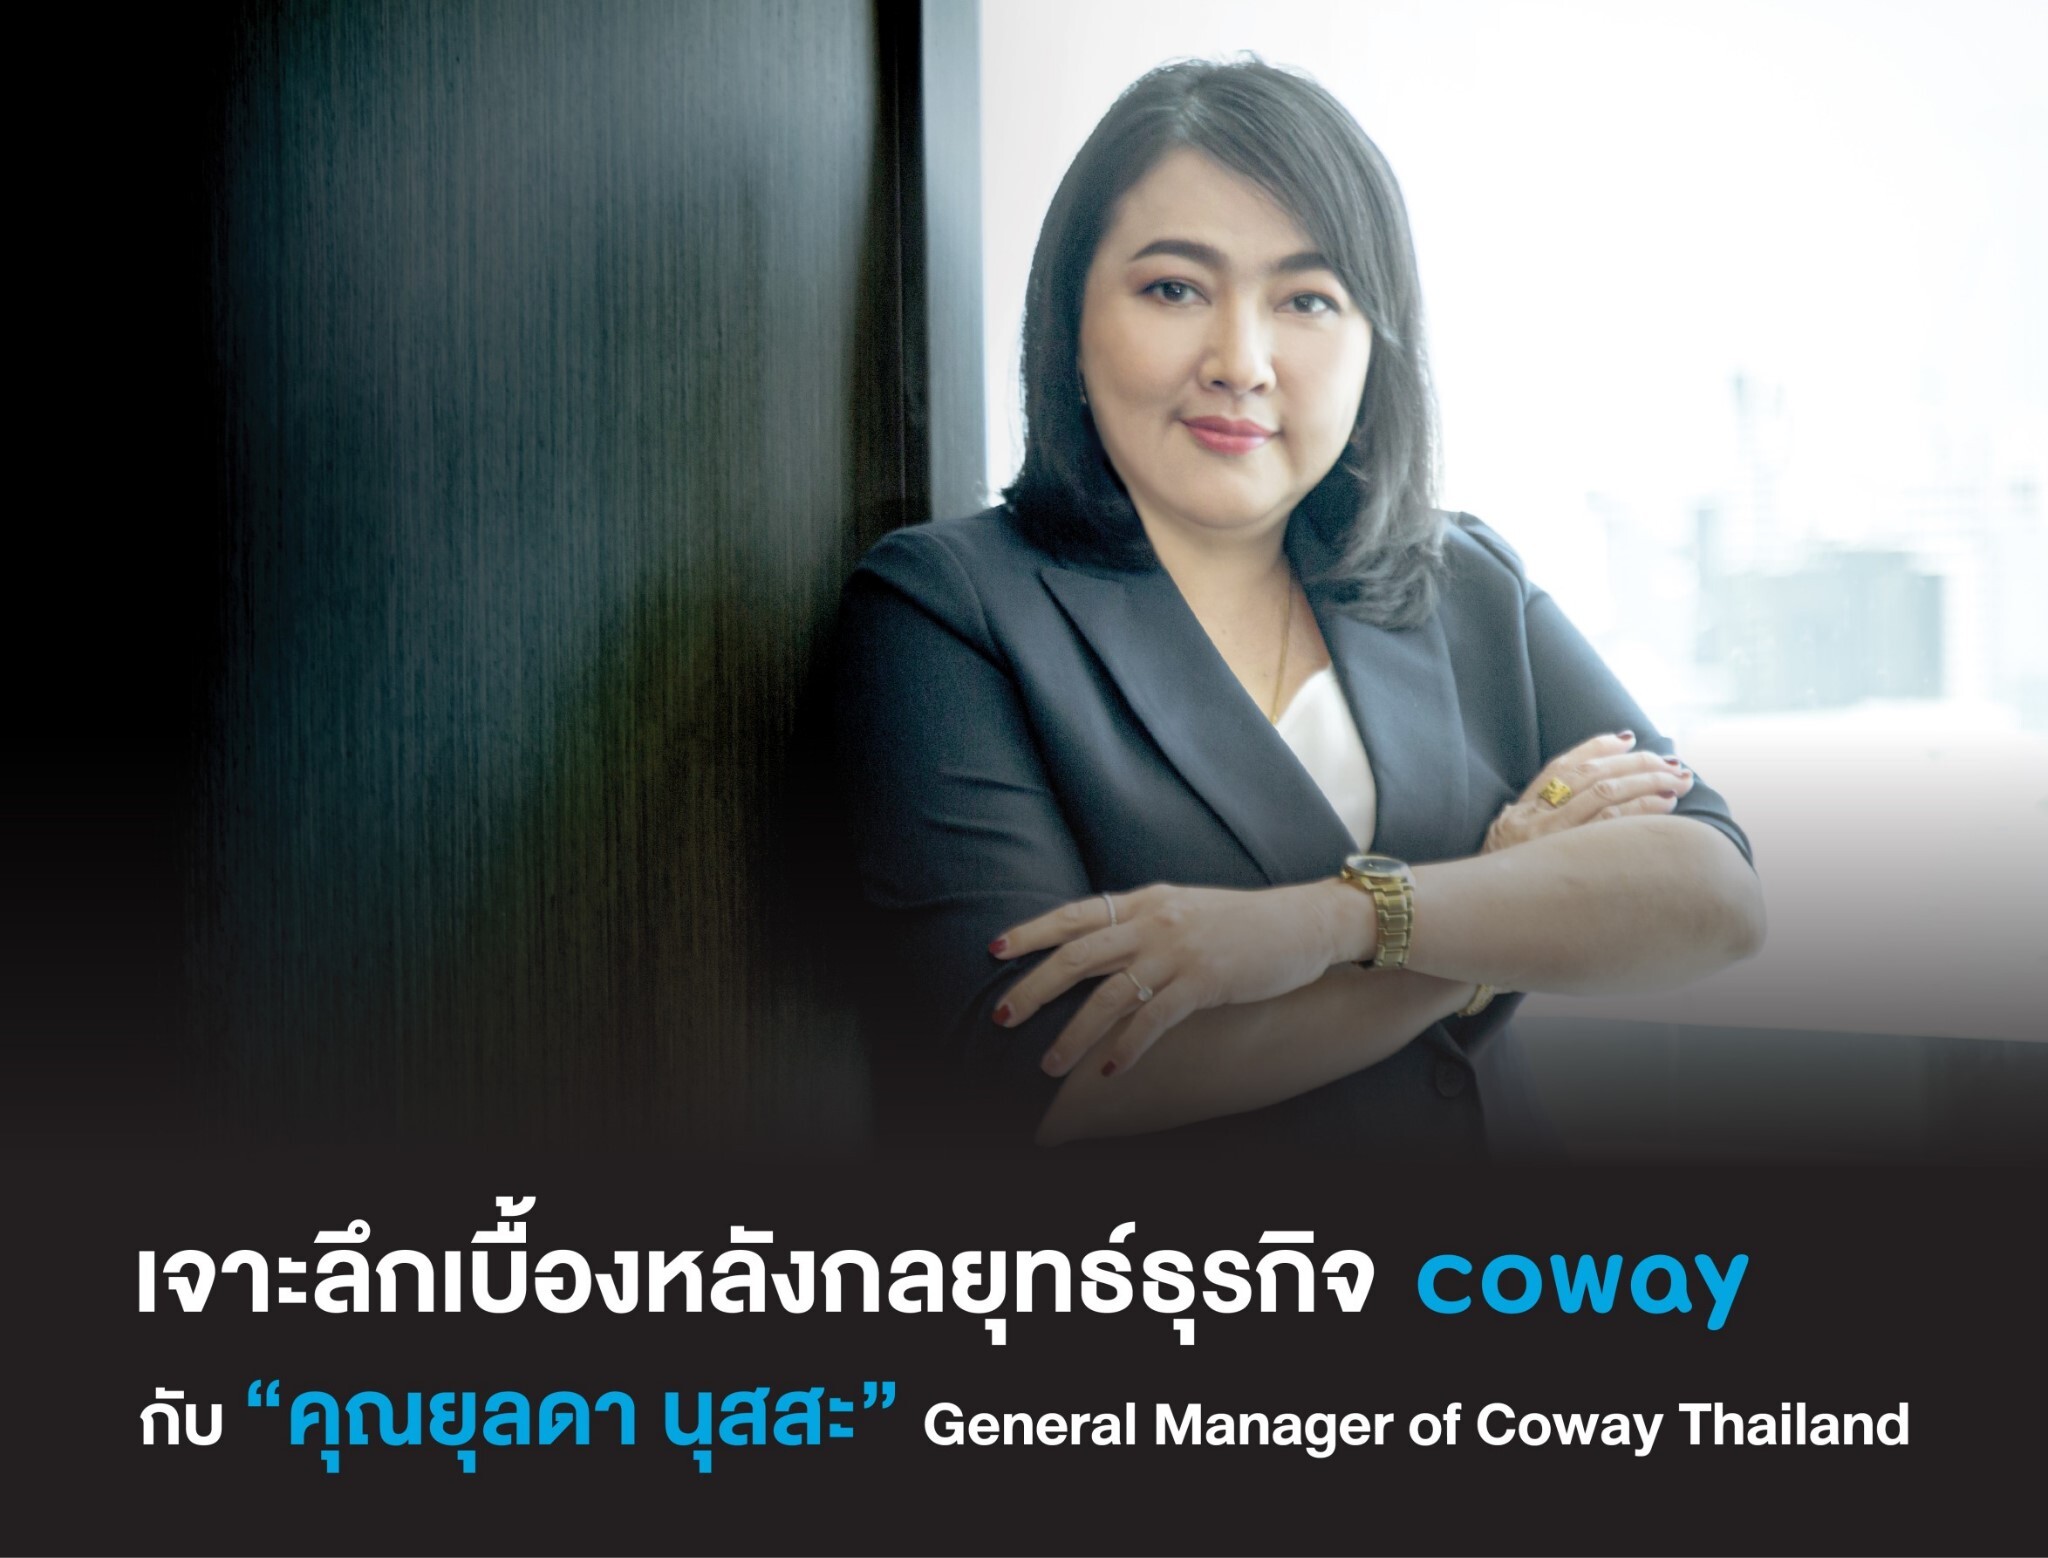 เจาะลึกเบื้องหลังกลยุทธ์ธุรกิจ Coway สร้างยอดขายให้เติบโตอย่างยั่งยืนกับ "คุณยุลดา นุสสะ" General Manager of Coway Thailand